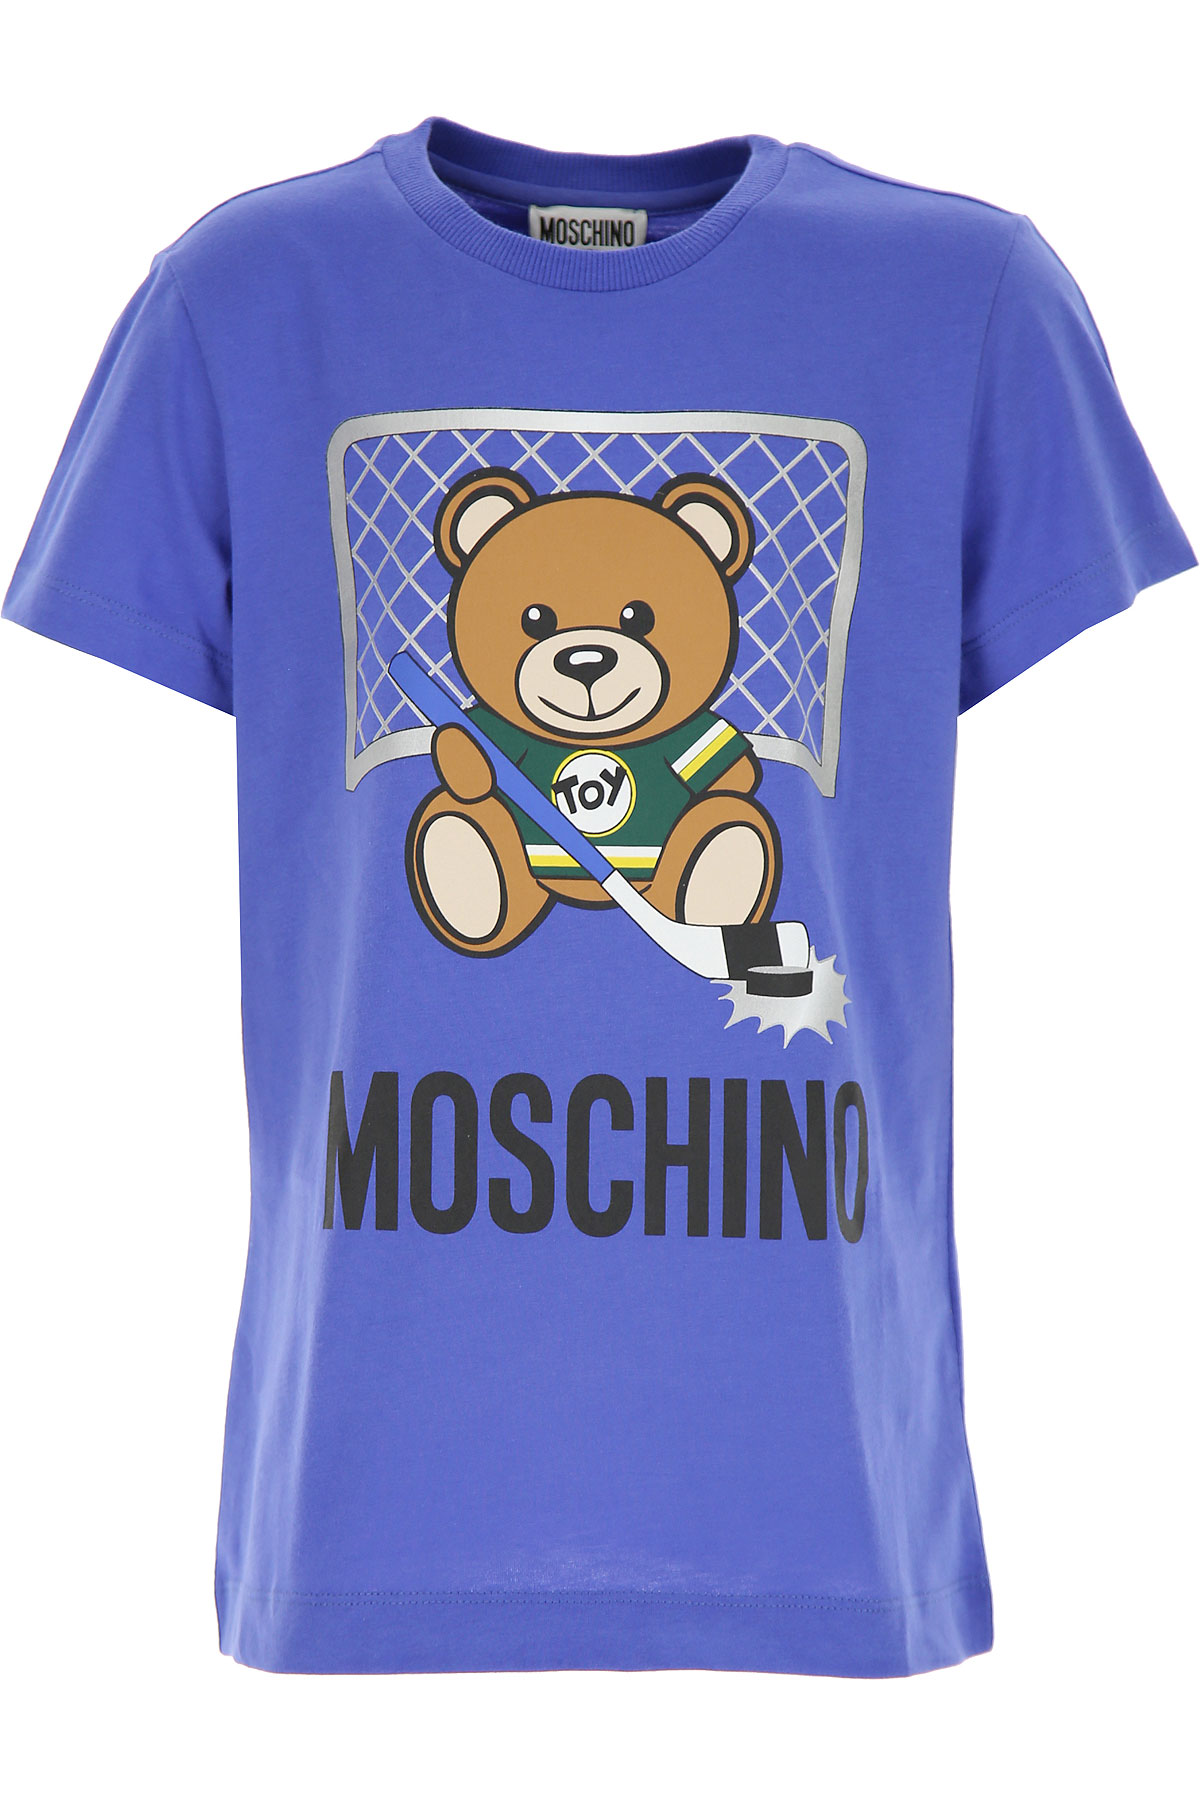 Moschino Kinder T-Shirt für Jungen Günstig im Sale, Bluette, Baumwolle, 2017, 10Y 12Y 14Y 4Y 5Y 6Y 8Y